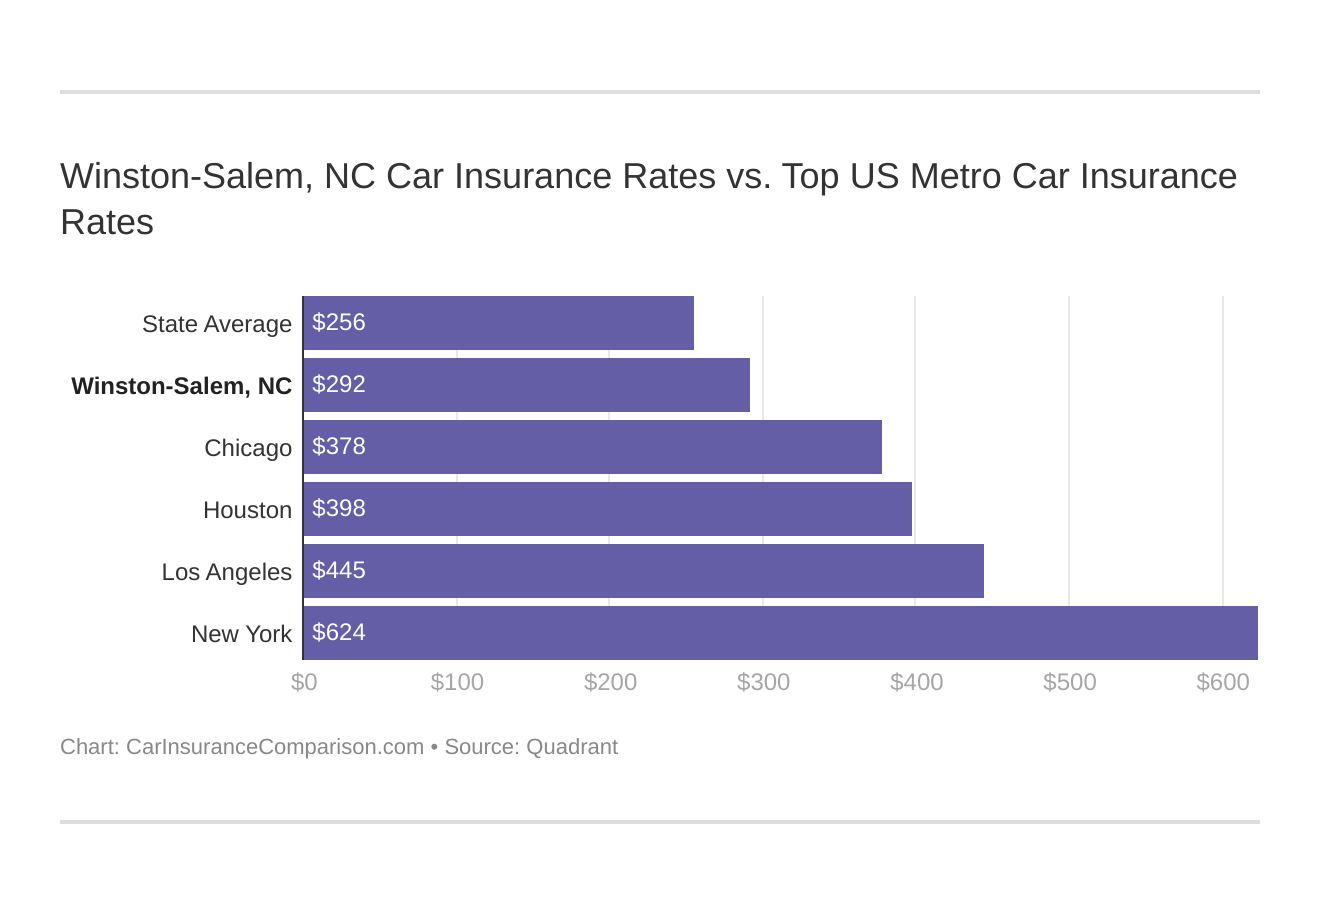 Winston-Salem, NC Car Insurance Rates vs. Top US Metro Car Insurance Rates